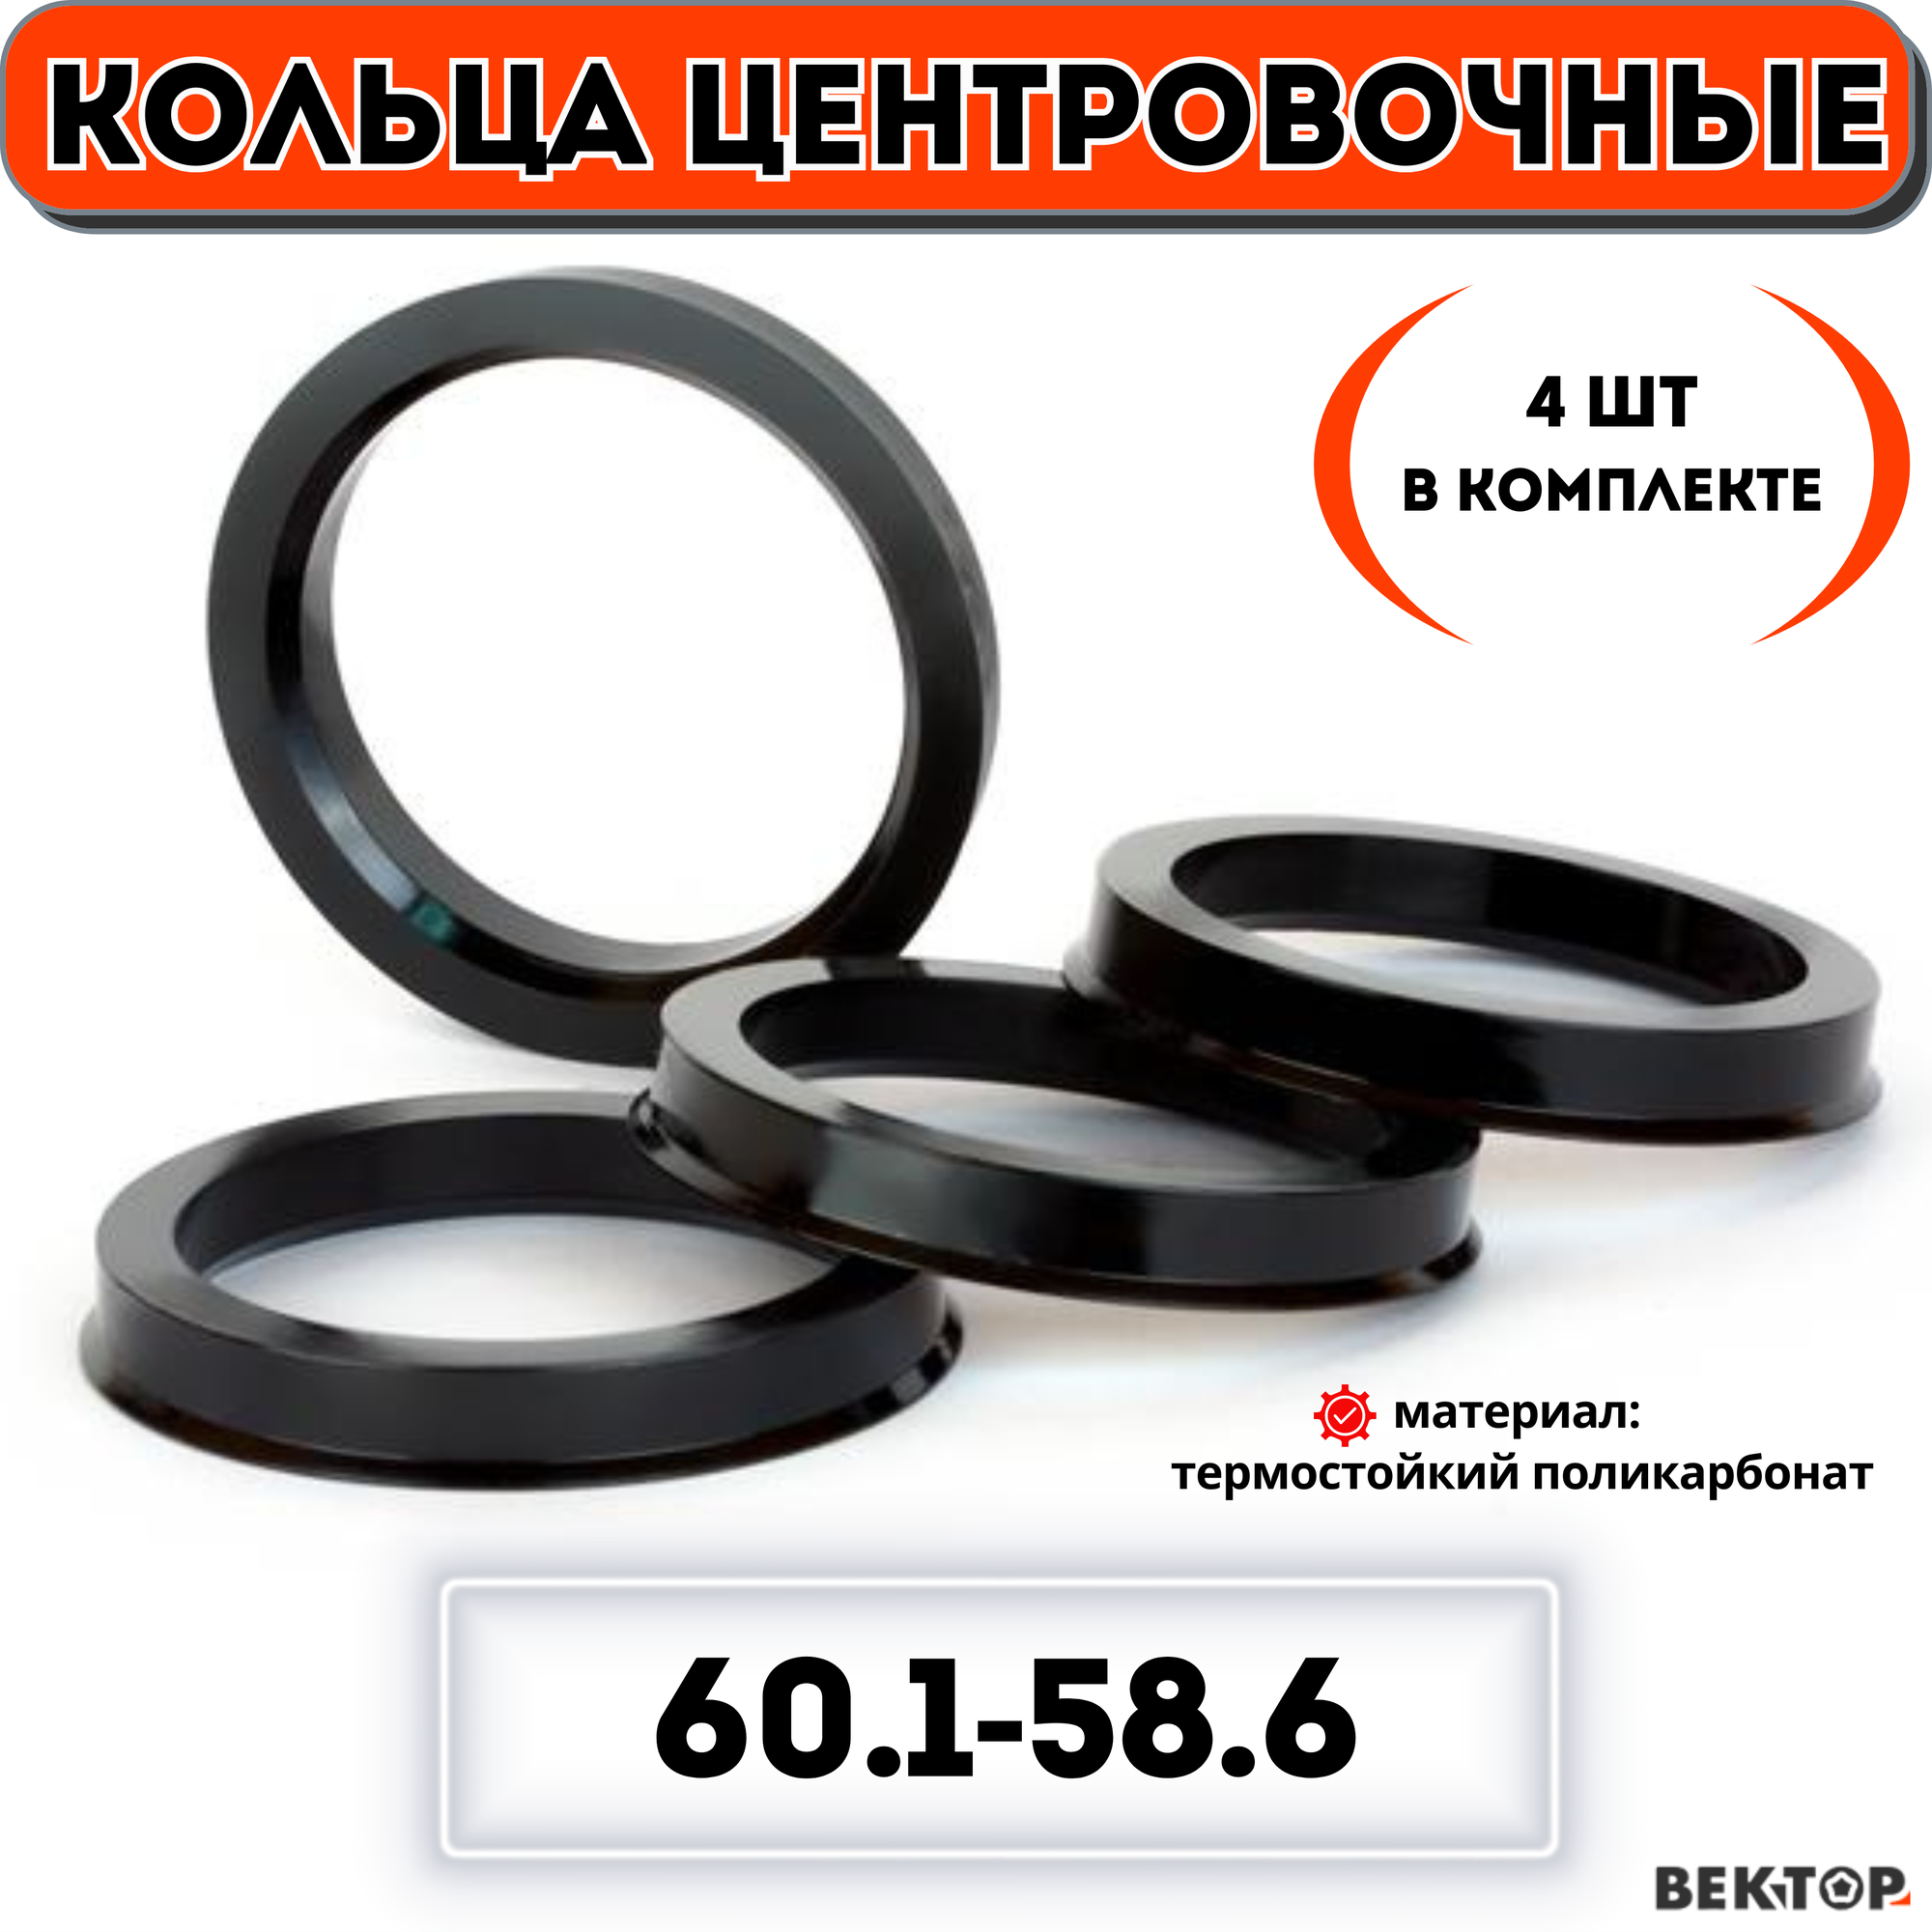 Кольца центровочные для автомобильных дисков 60,1-58,6 "вектор" (к-т 4 шт.)